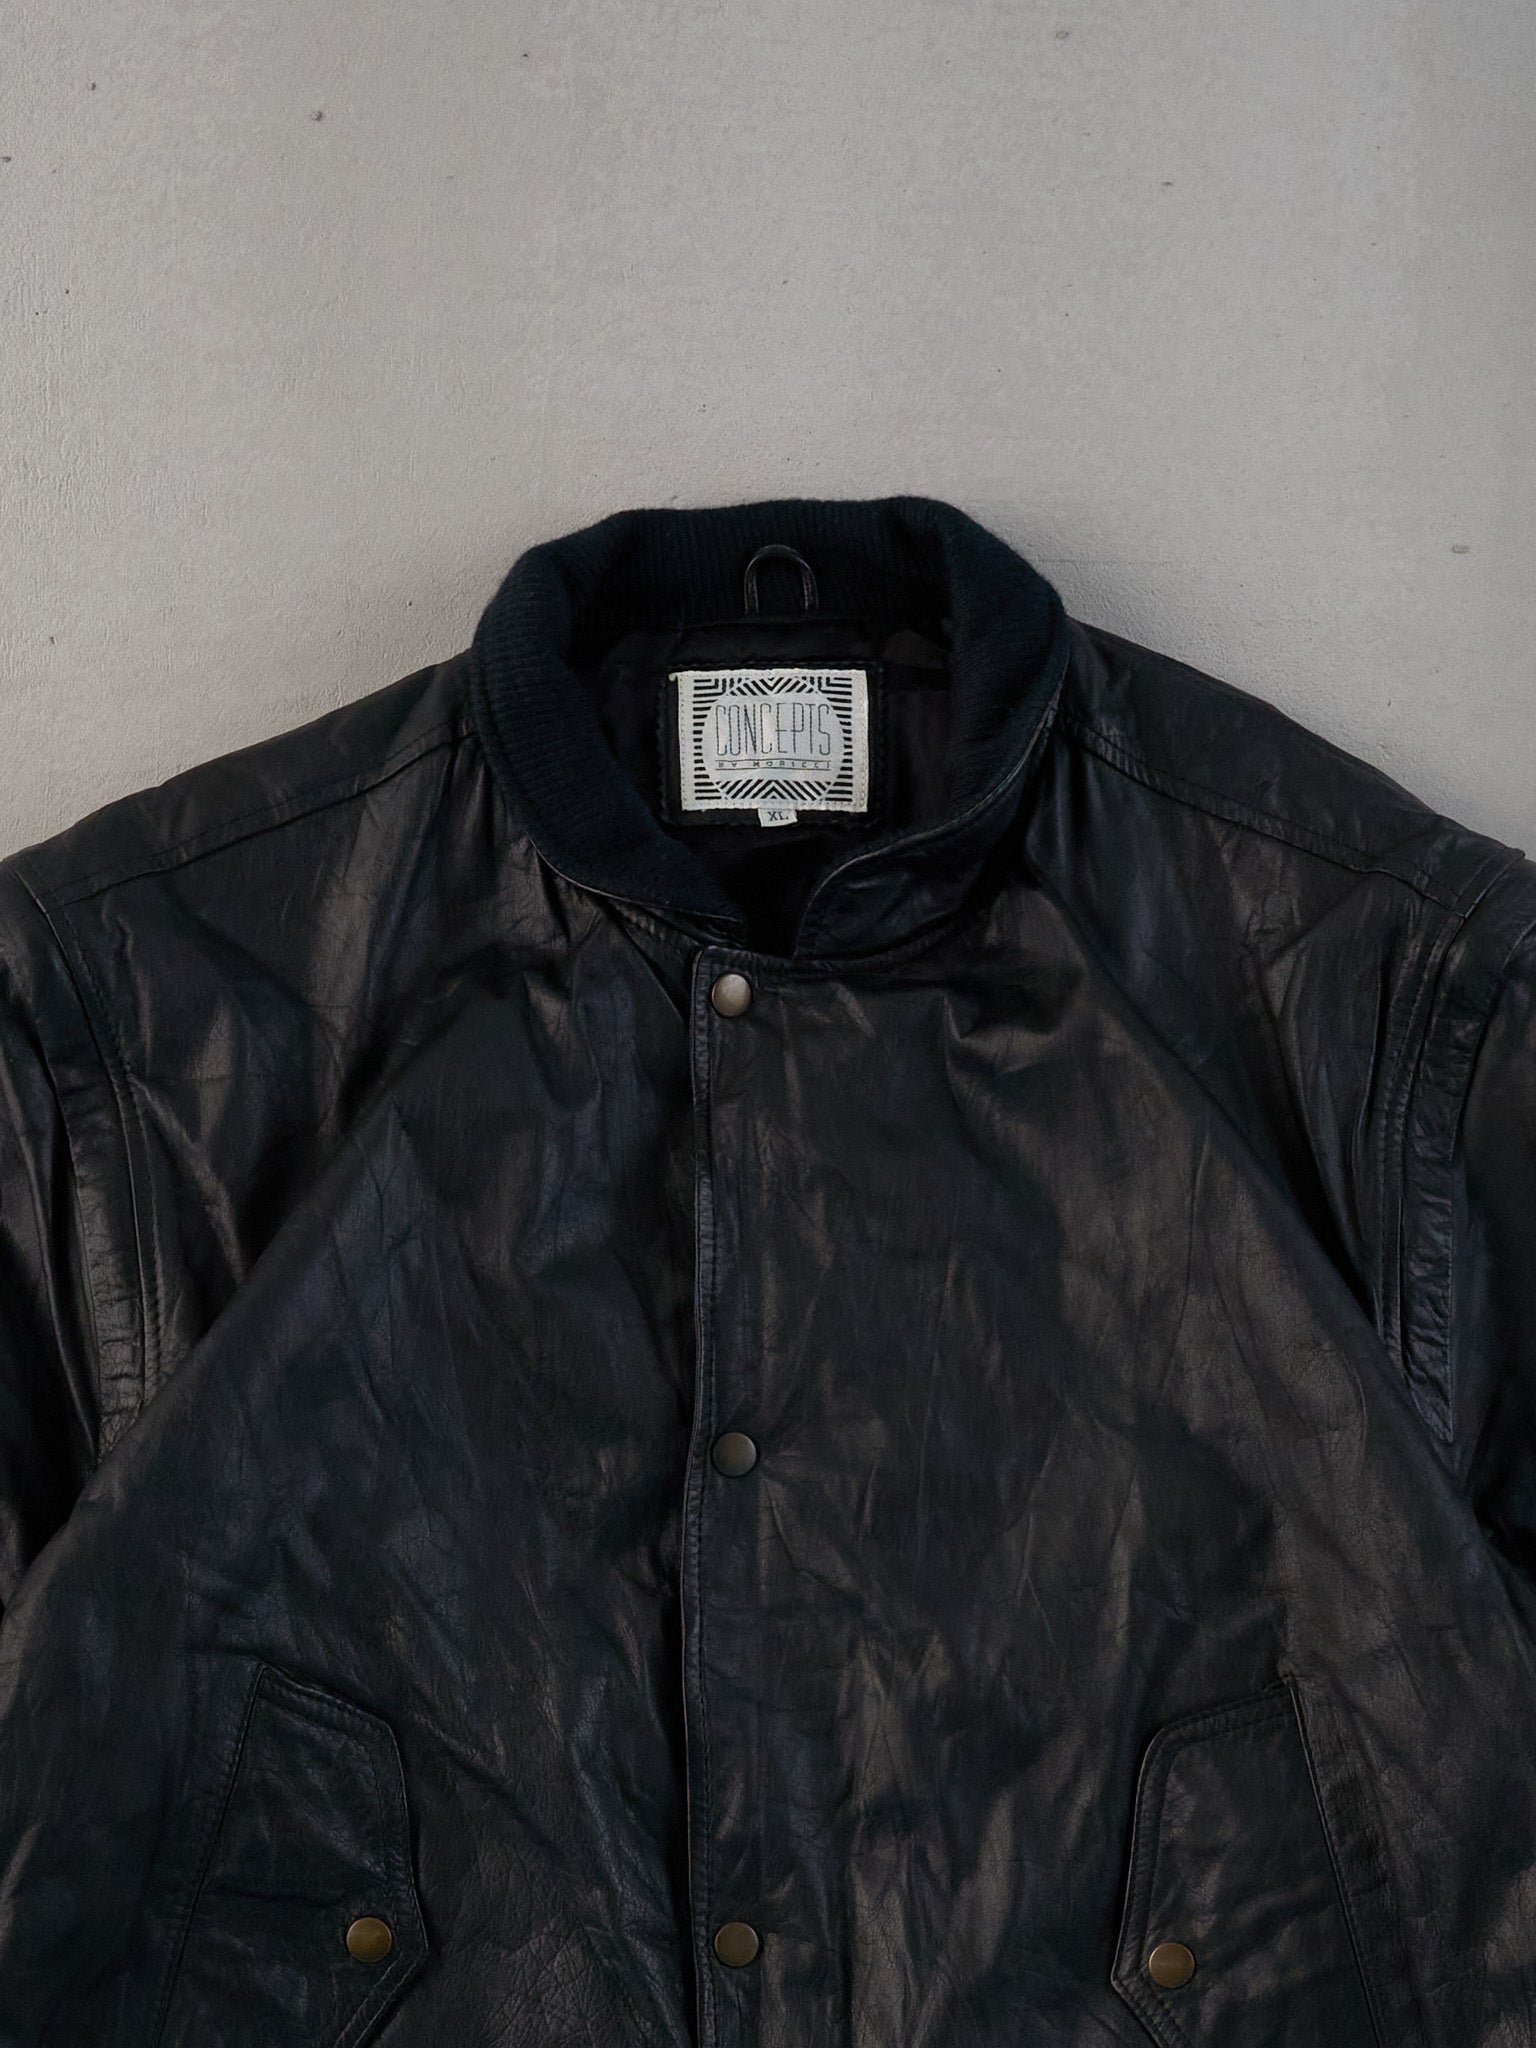 Vintage 90s Black Hardrock Cafe Dallas Collared Leather Jacket (L)